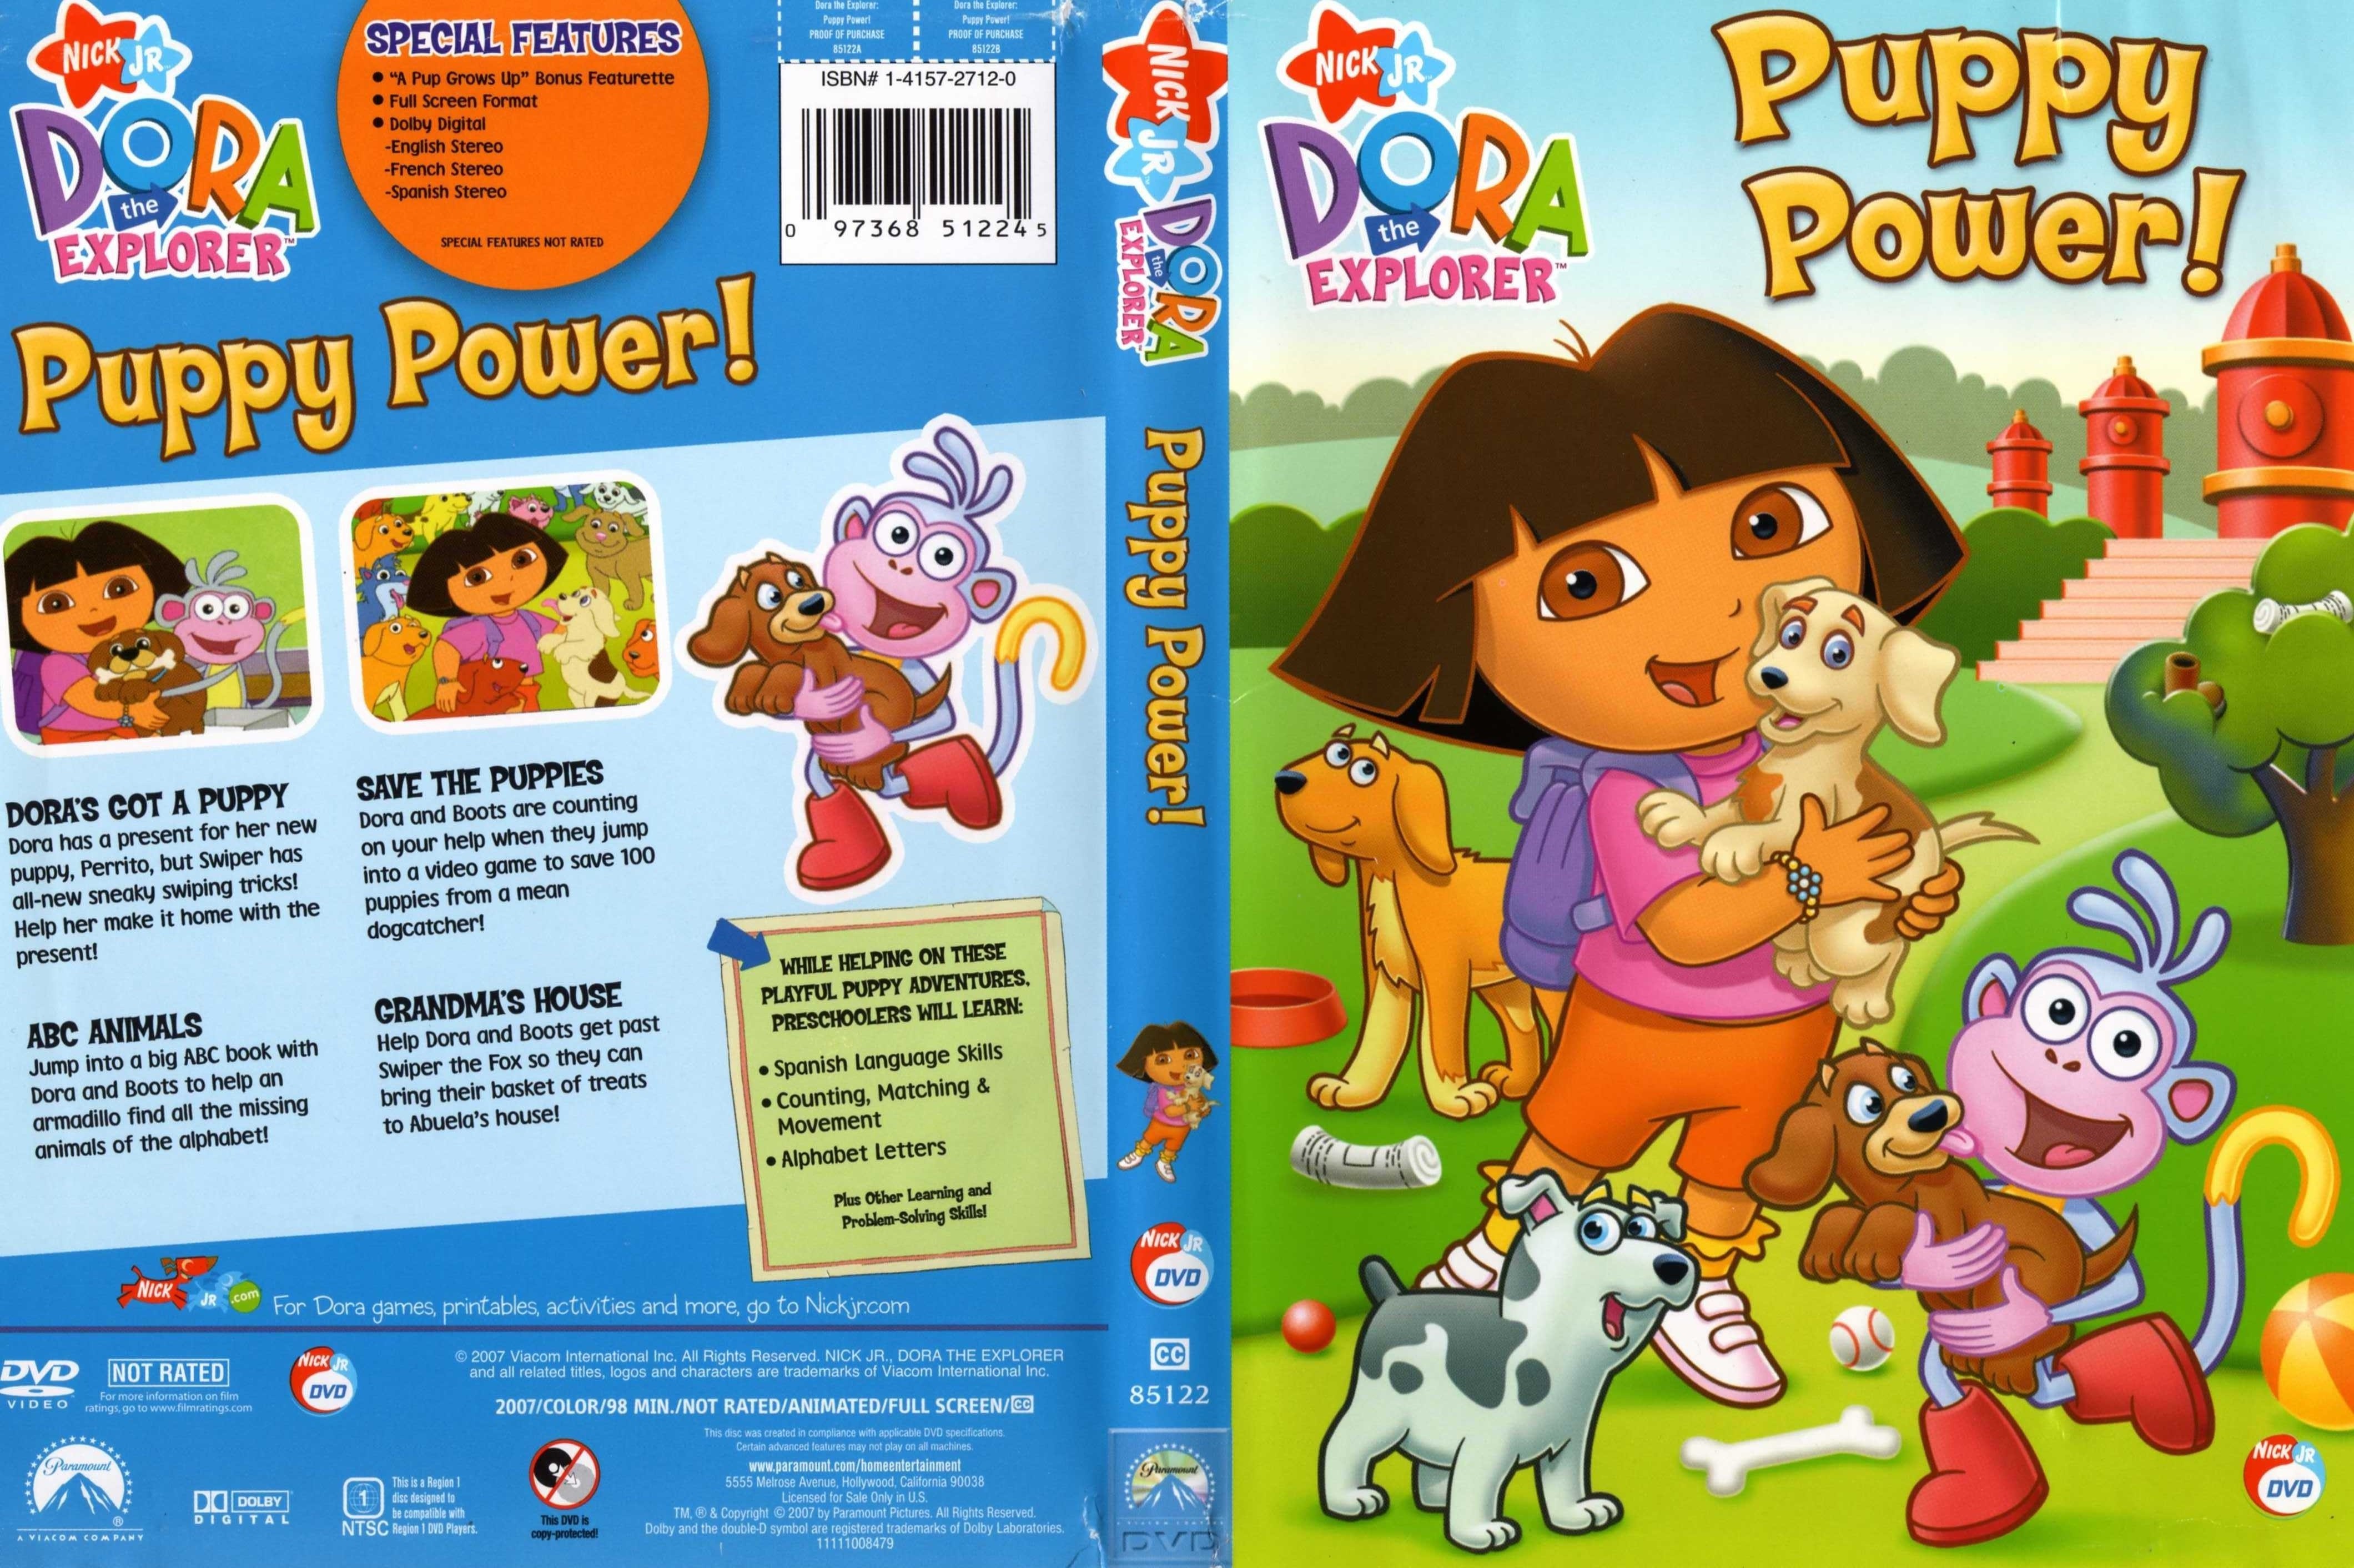 Jaquette DVD de Dora Puppy power (Canadienne) - Cinéma Passi